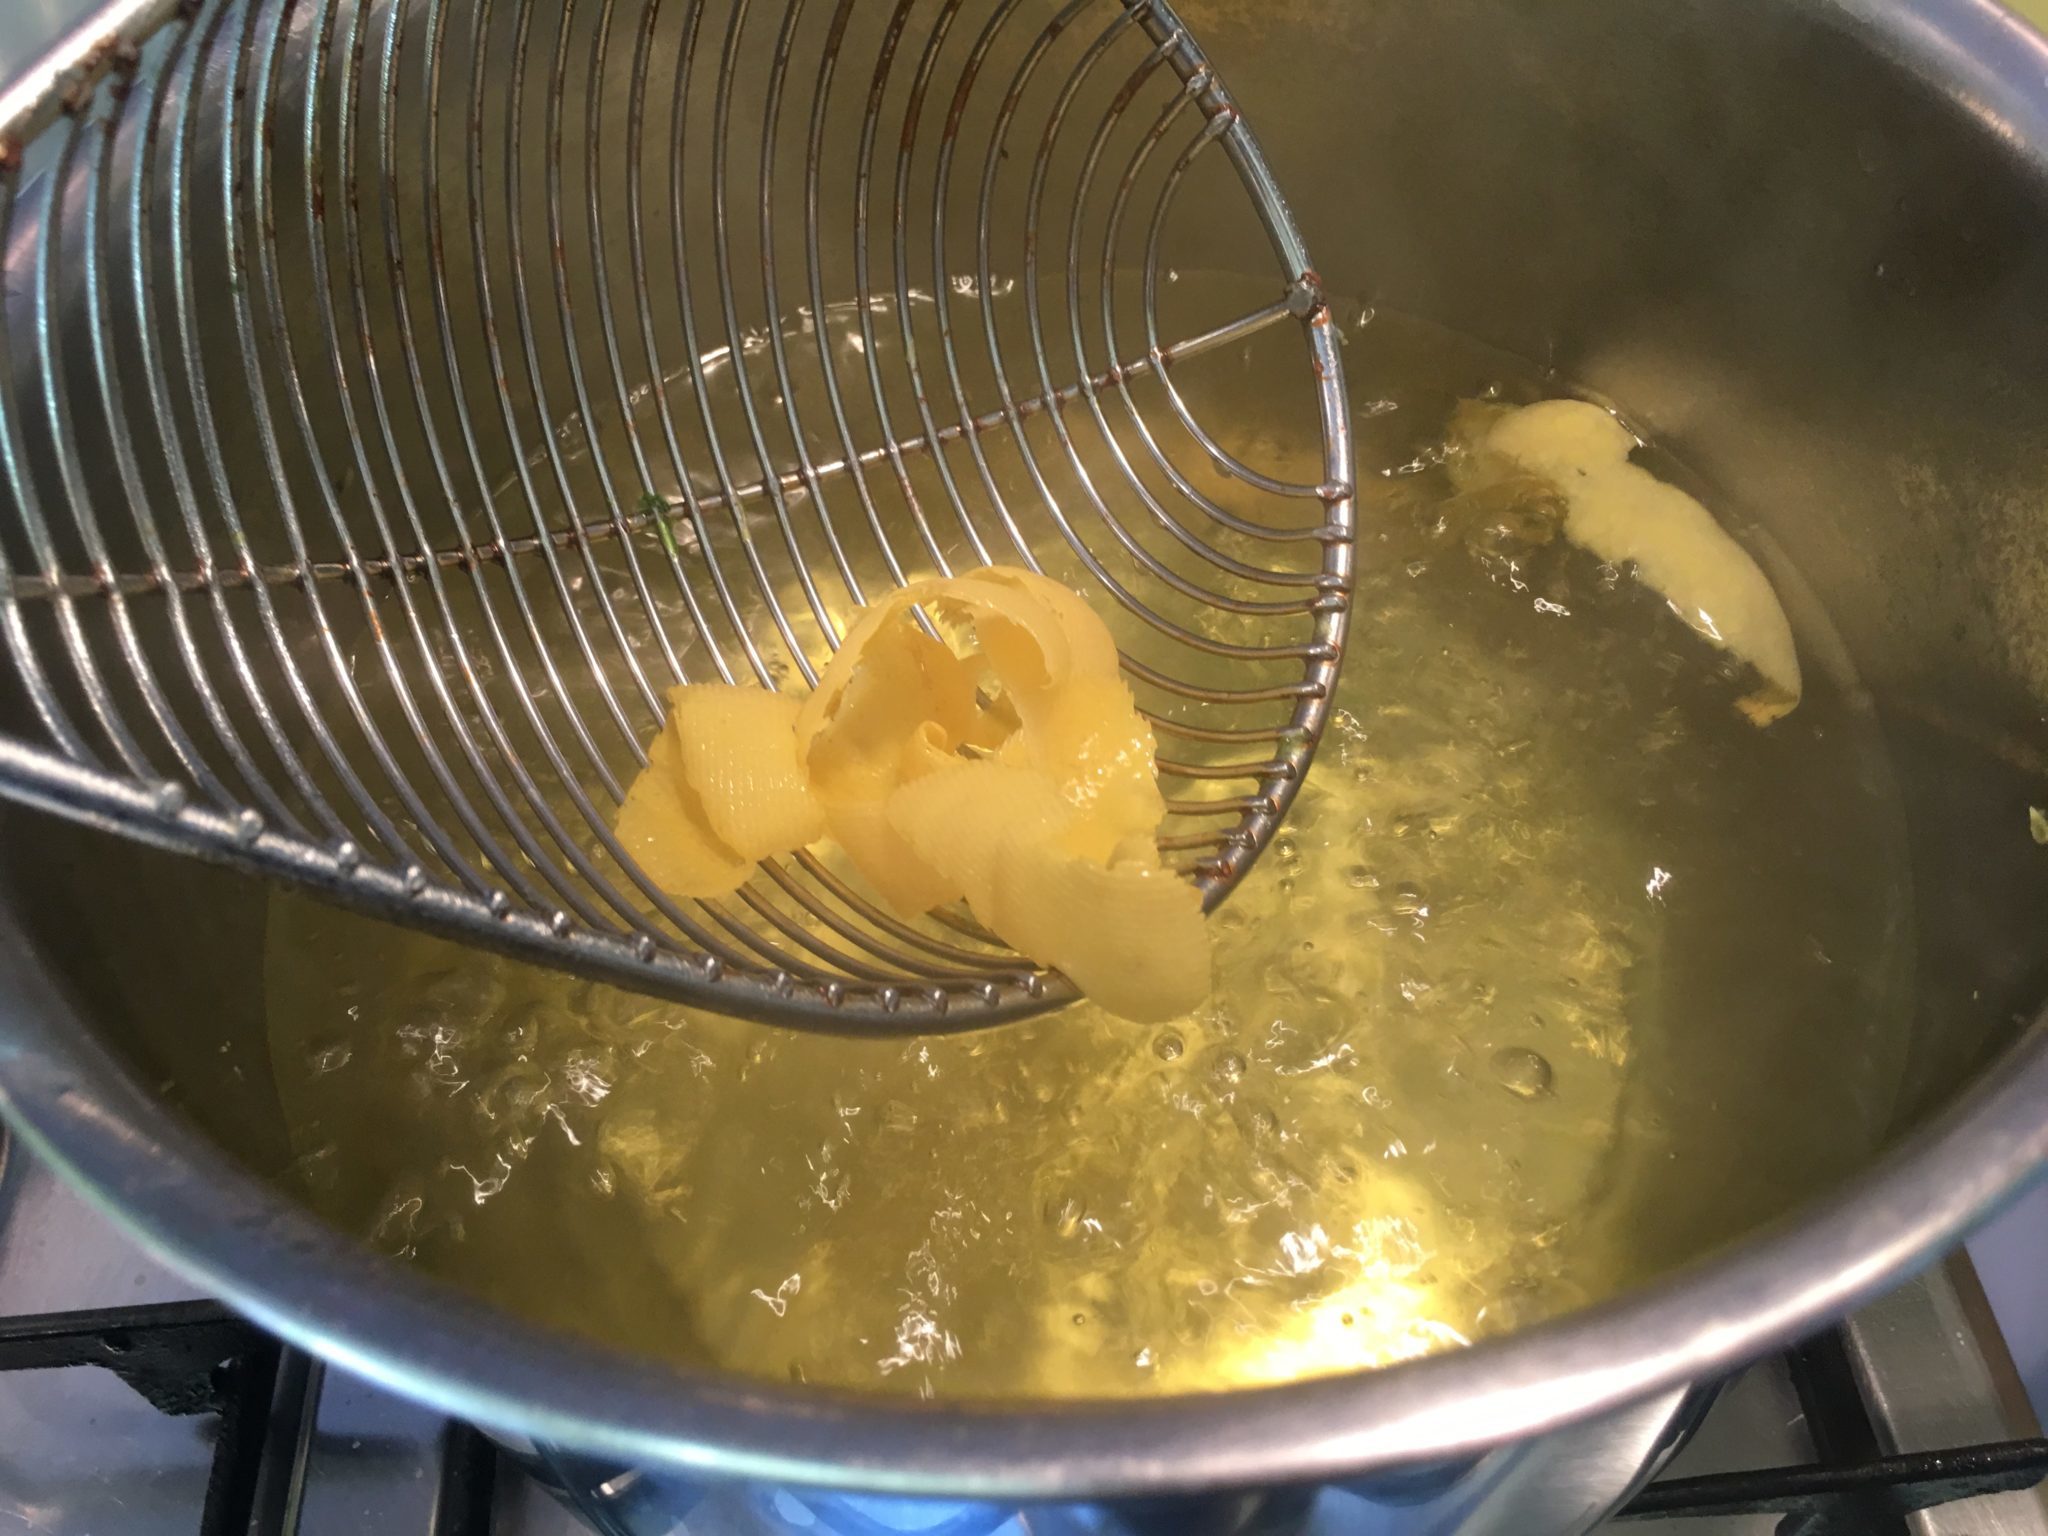 Tagliatelle al limone - togliere la buccia di limone dall'acqua in ebollizione